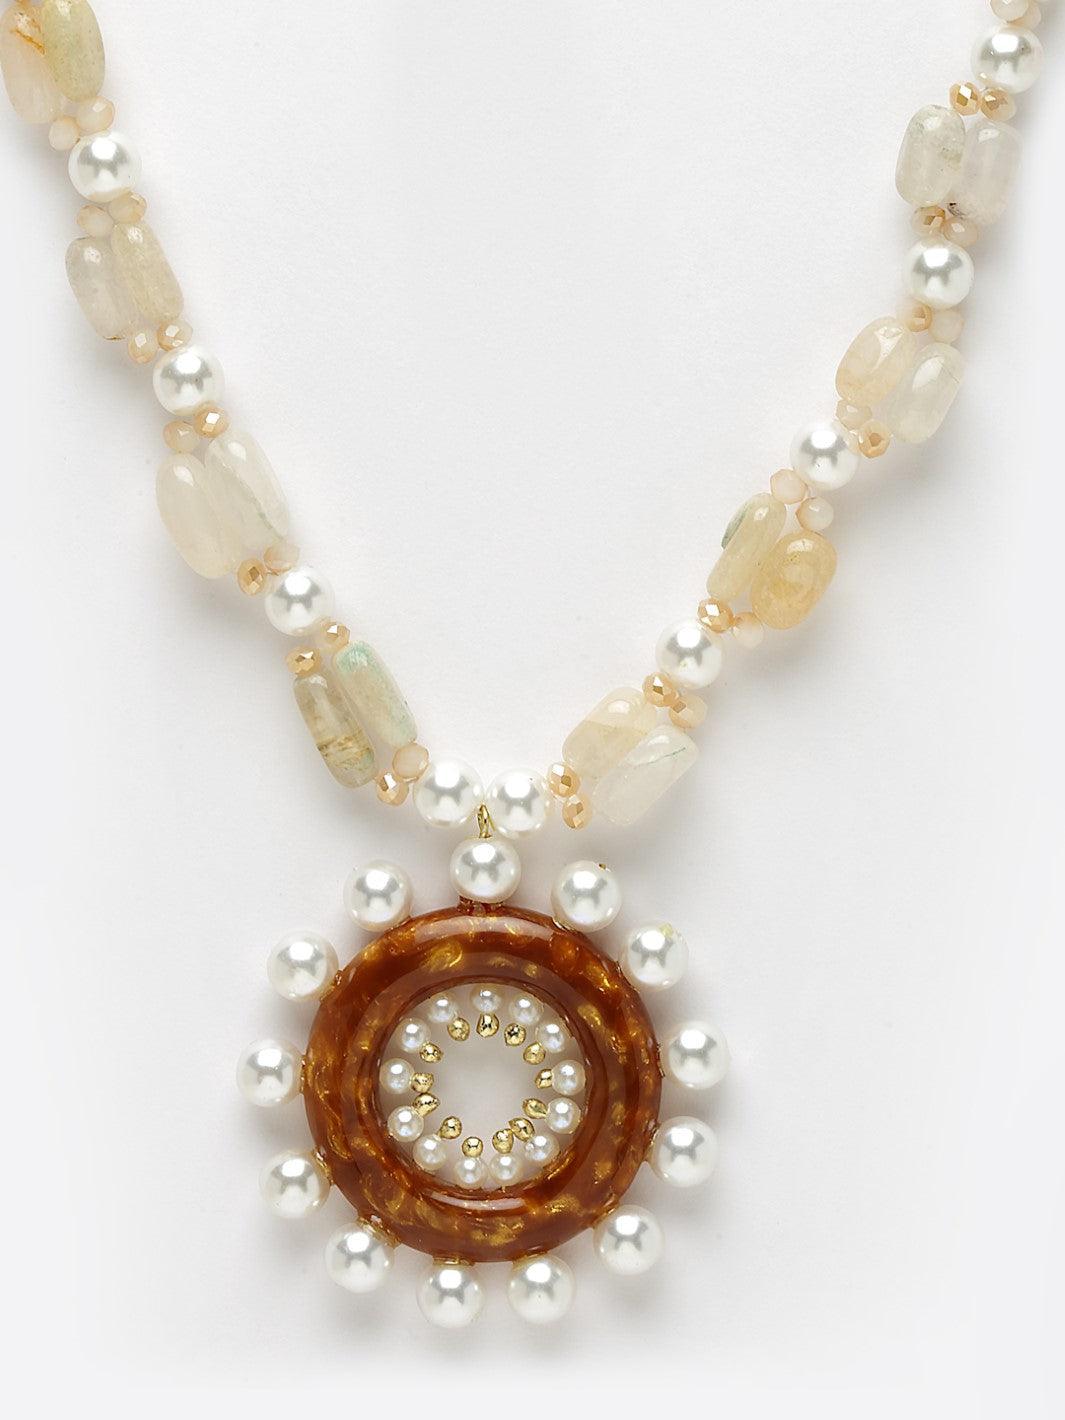 Sunshine Necklace with Semi precious stones - Bijoux by Priya